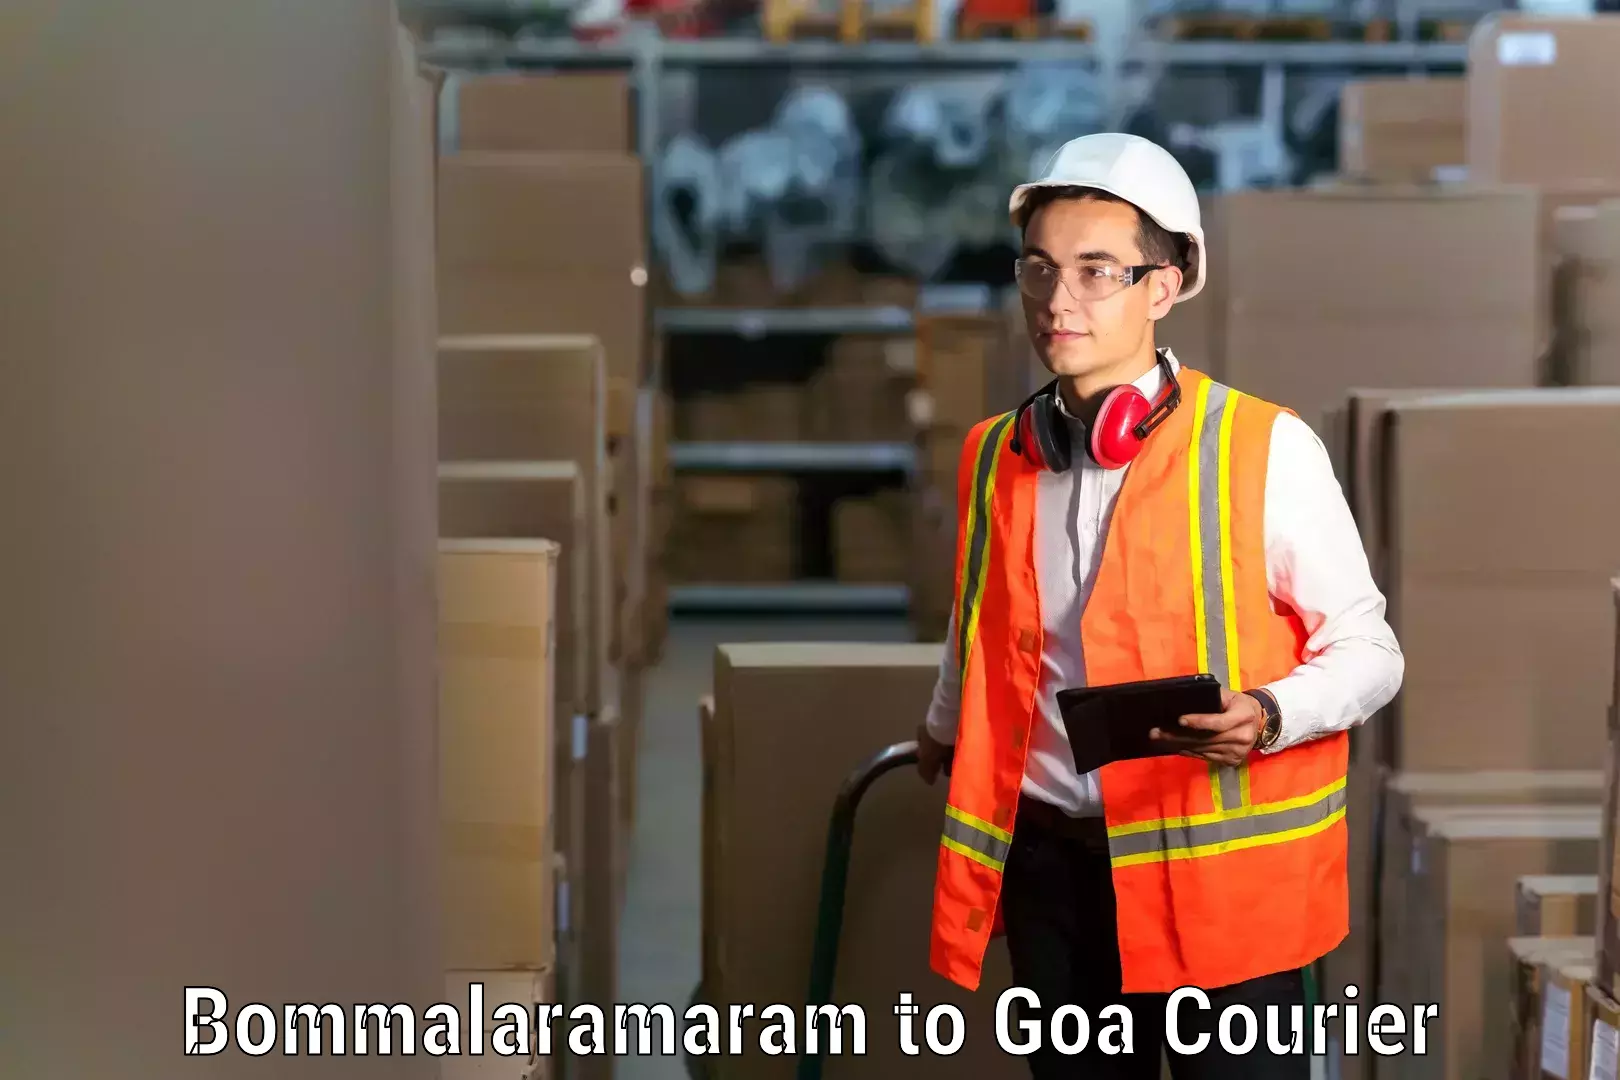 Efficient moving company Bommalaramaram to South Goa